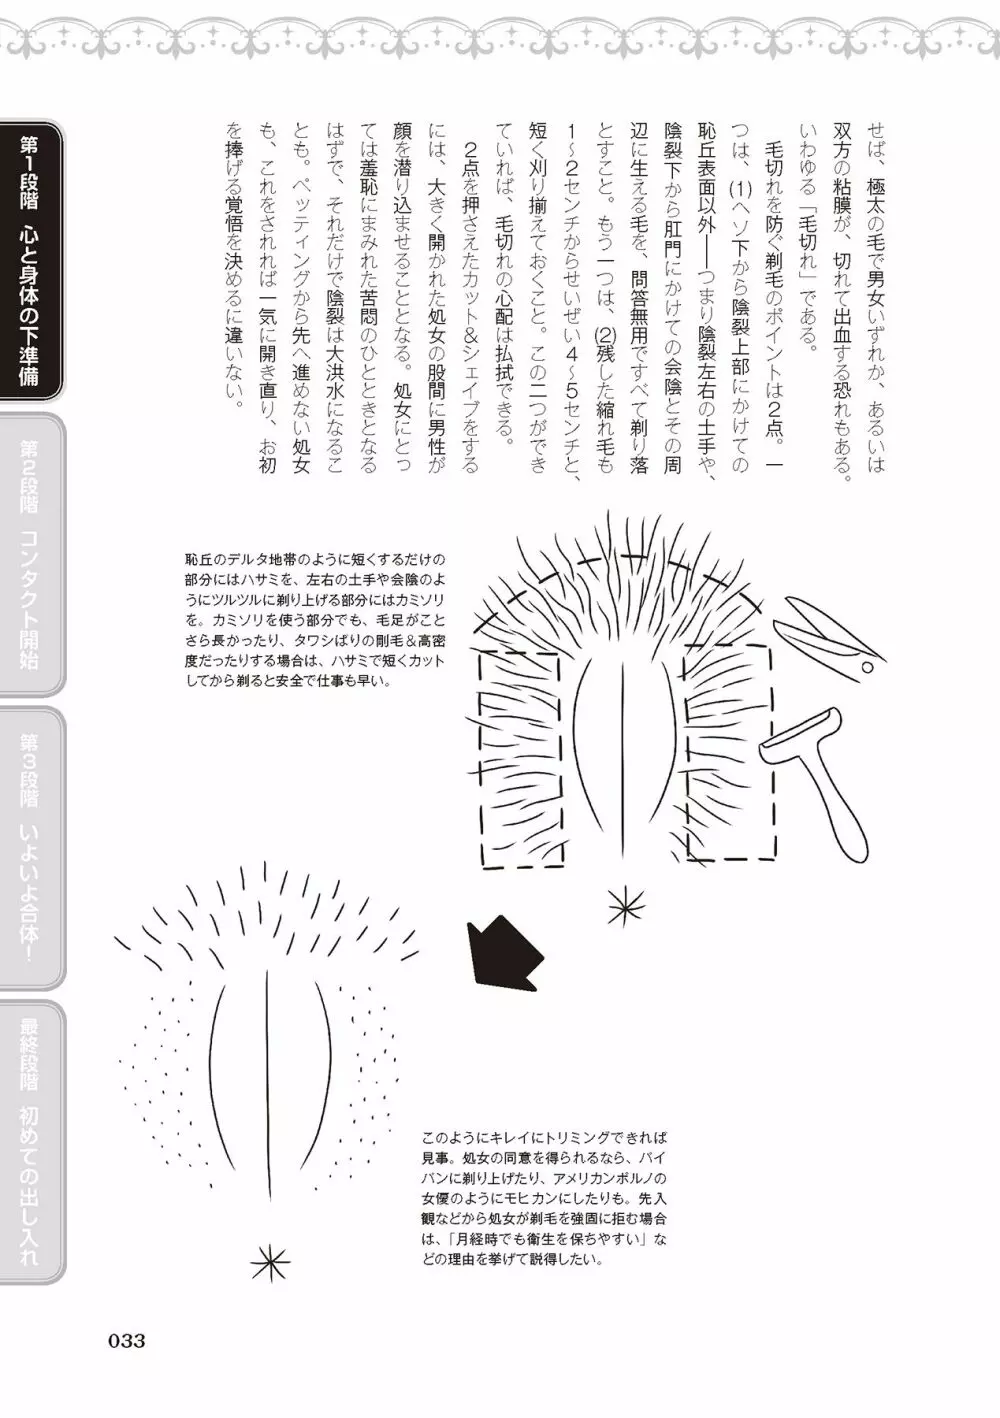 処女喪失・ロストヴァージンSEX完全マニュアル イラスト版……初エッチ 35ページ